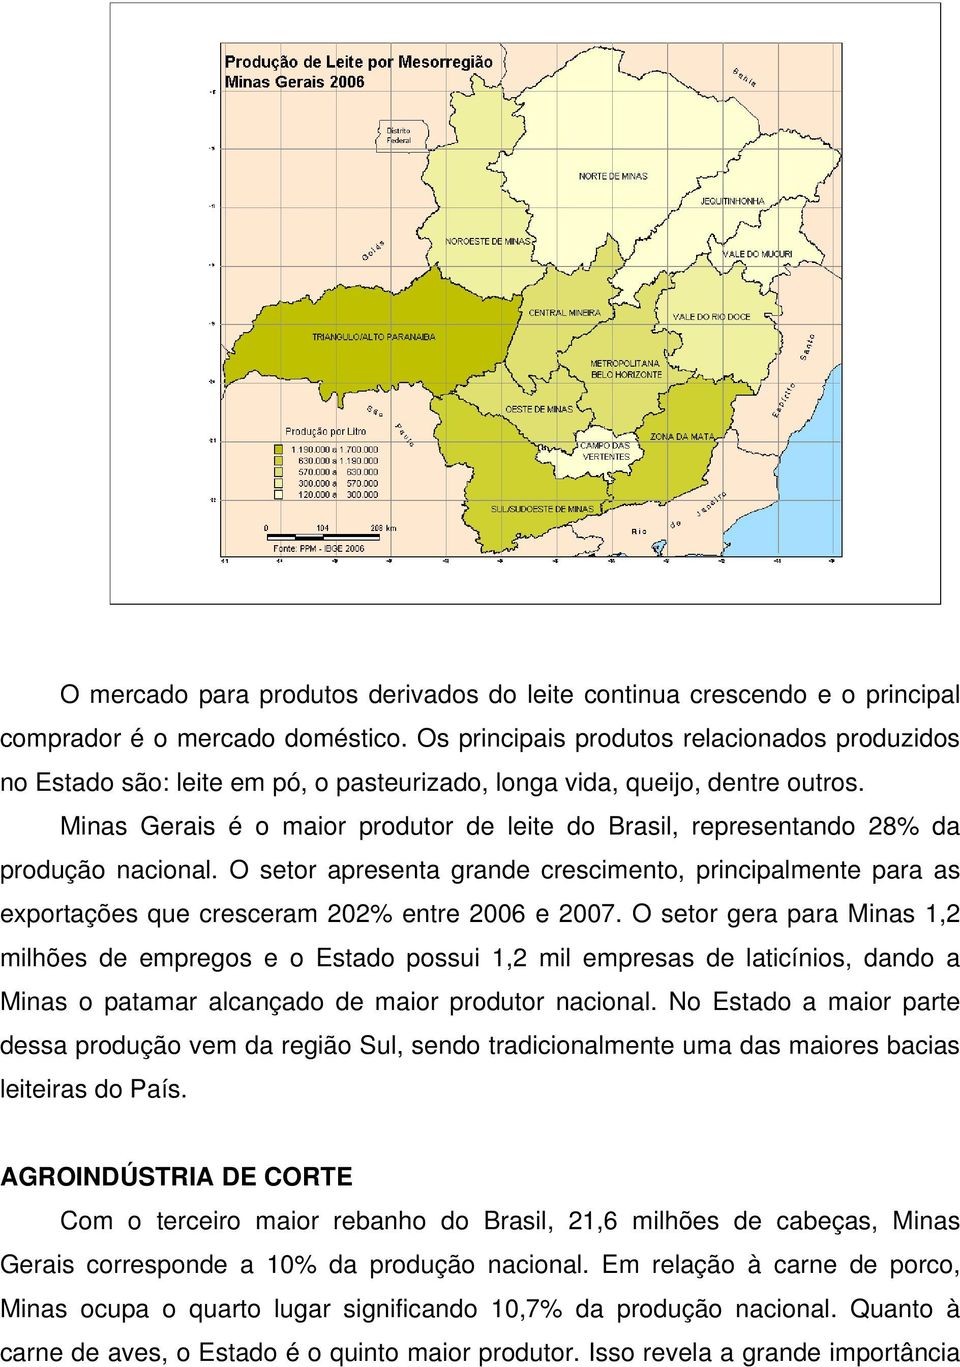 Minas Gerais é o maior produtor de leite do Brasil, representando 28% da produção nacional.